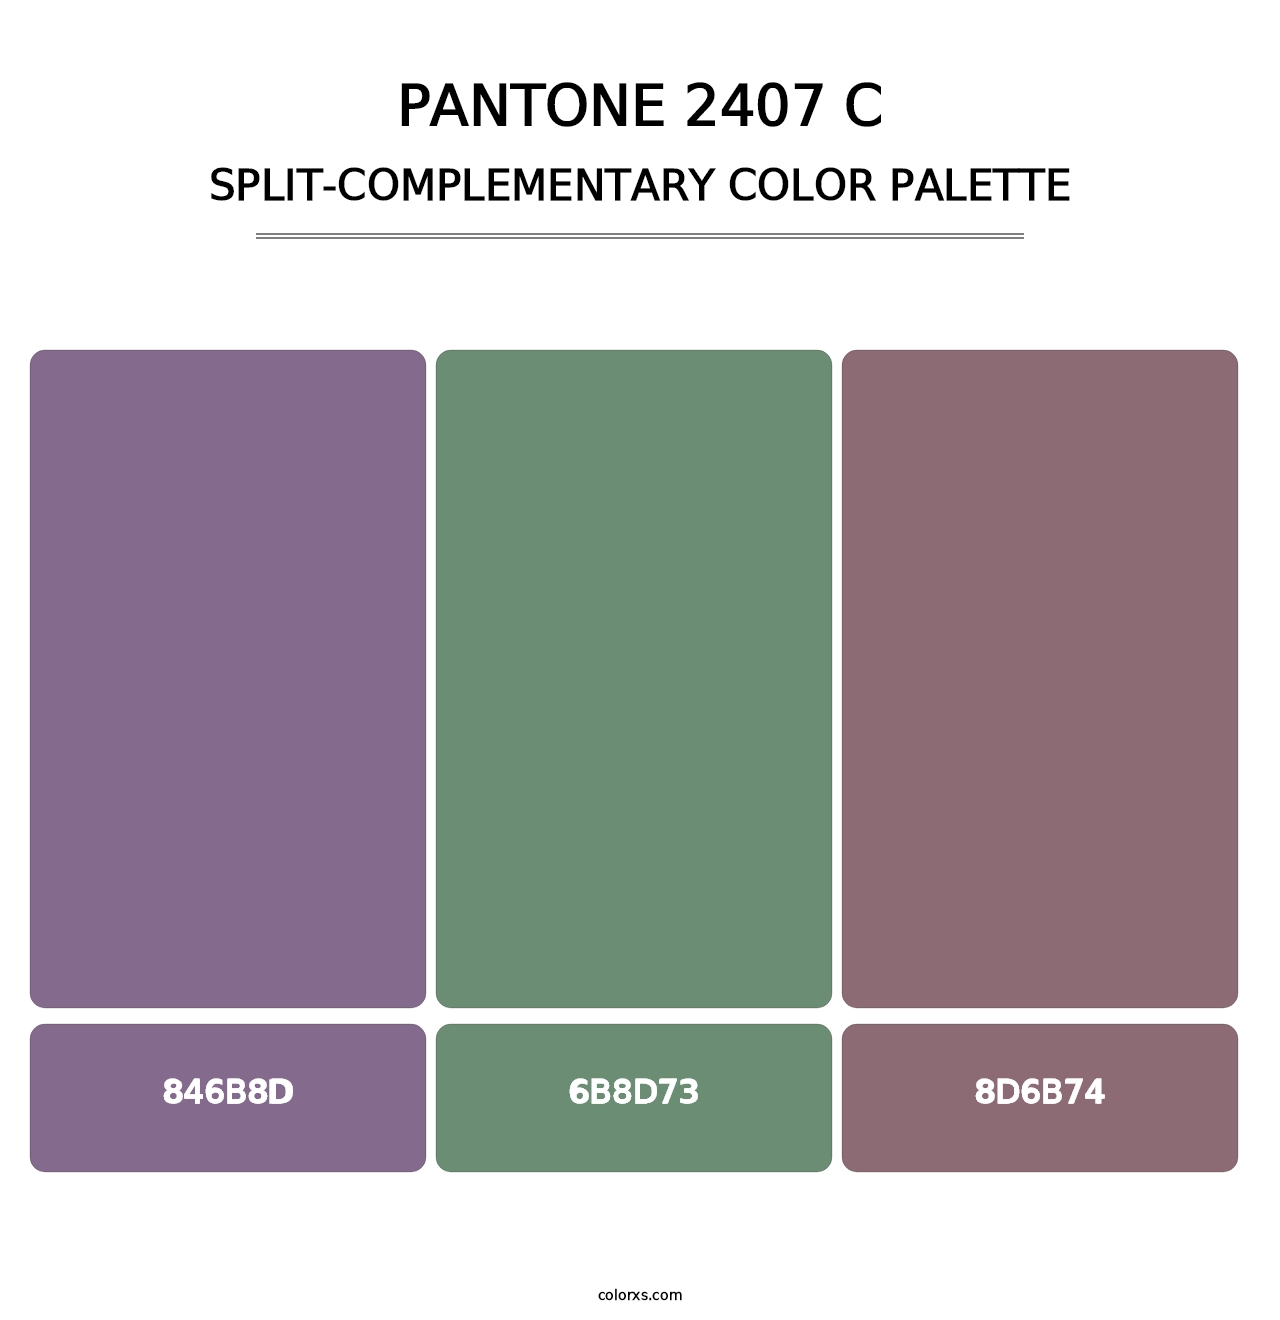 PANTONE 2407 C - Split-Complementary Color Palette